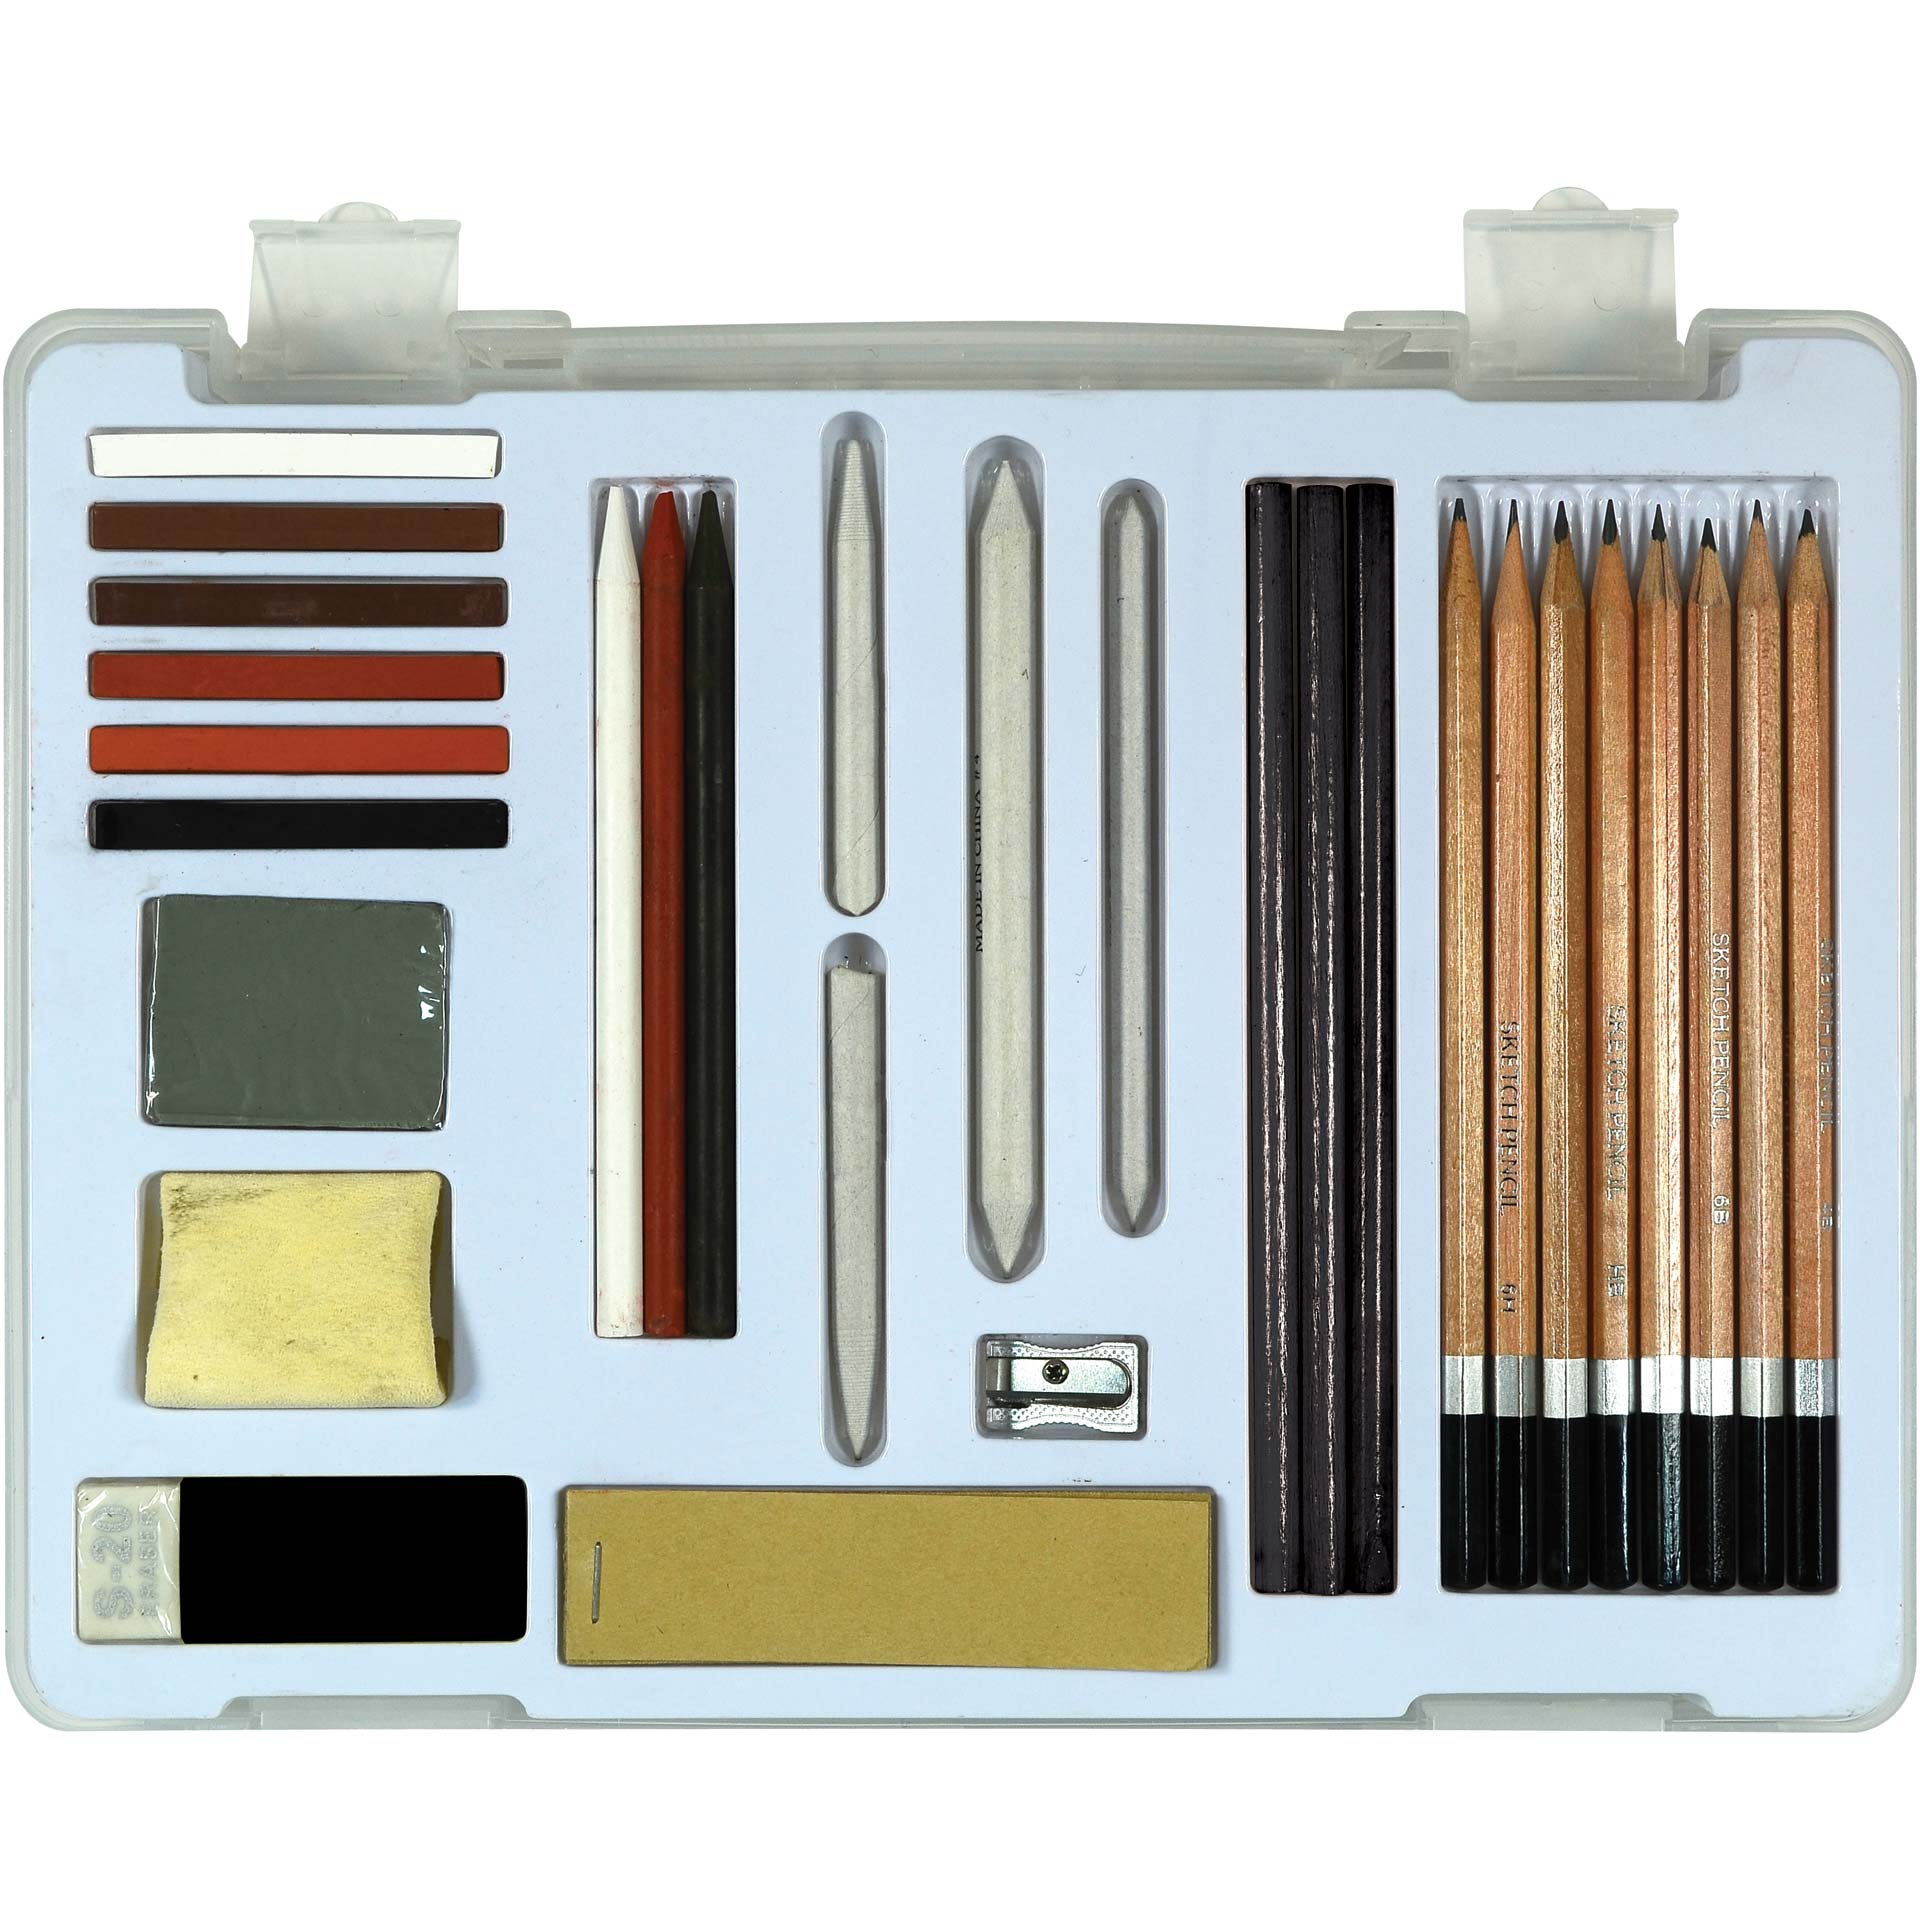 Pentalic Illustrator's Sketchbook Drawing Pencil Set Value Pack